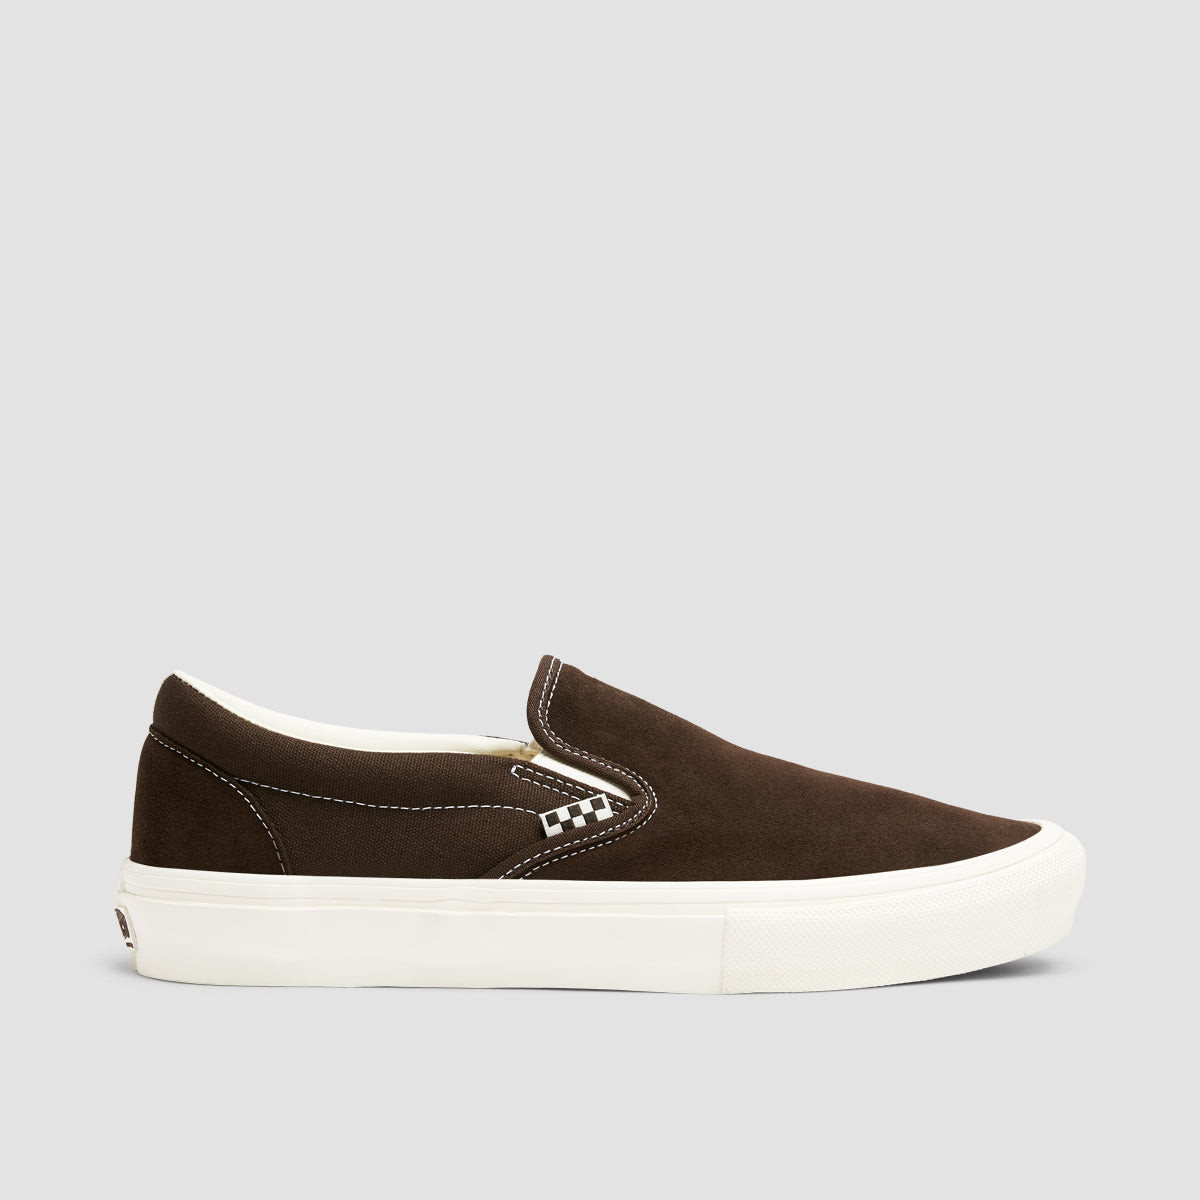 Vans Skate Slip-On Shoes - Chocolate Brown